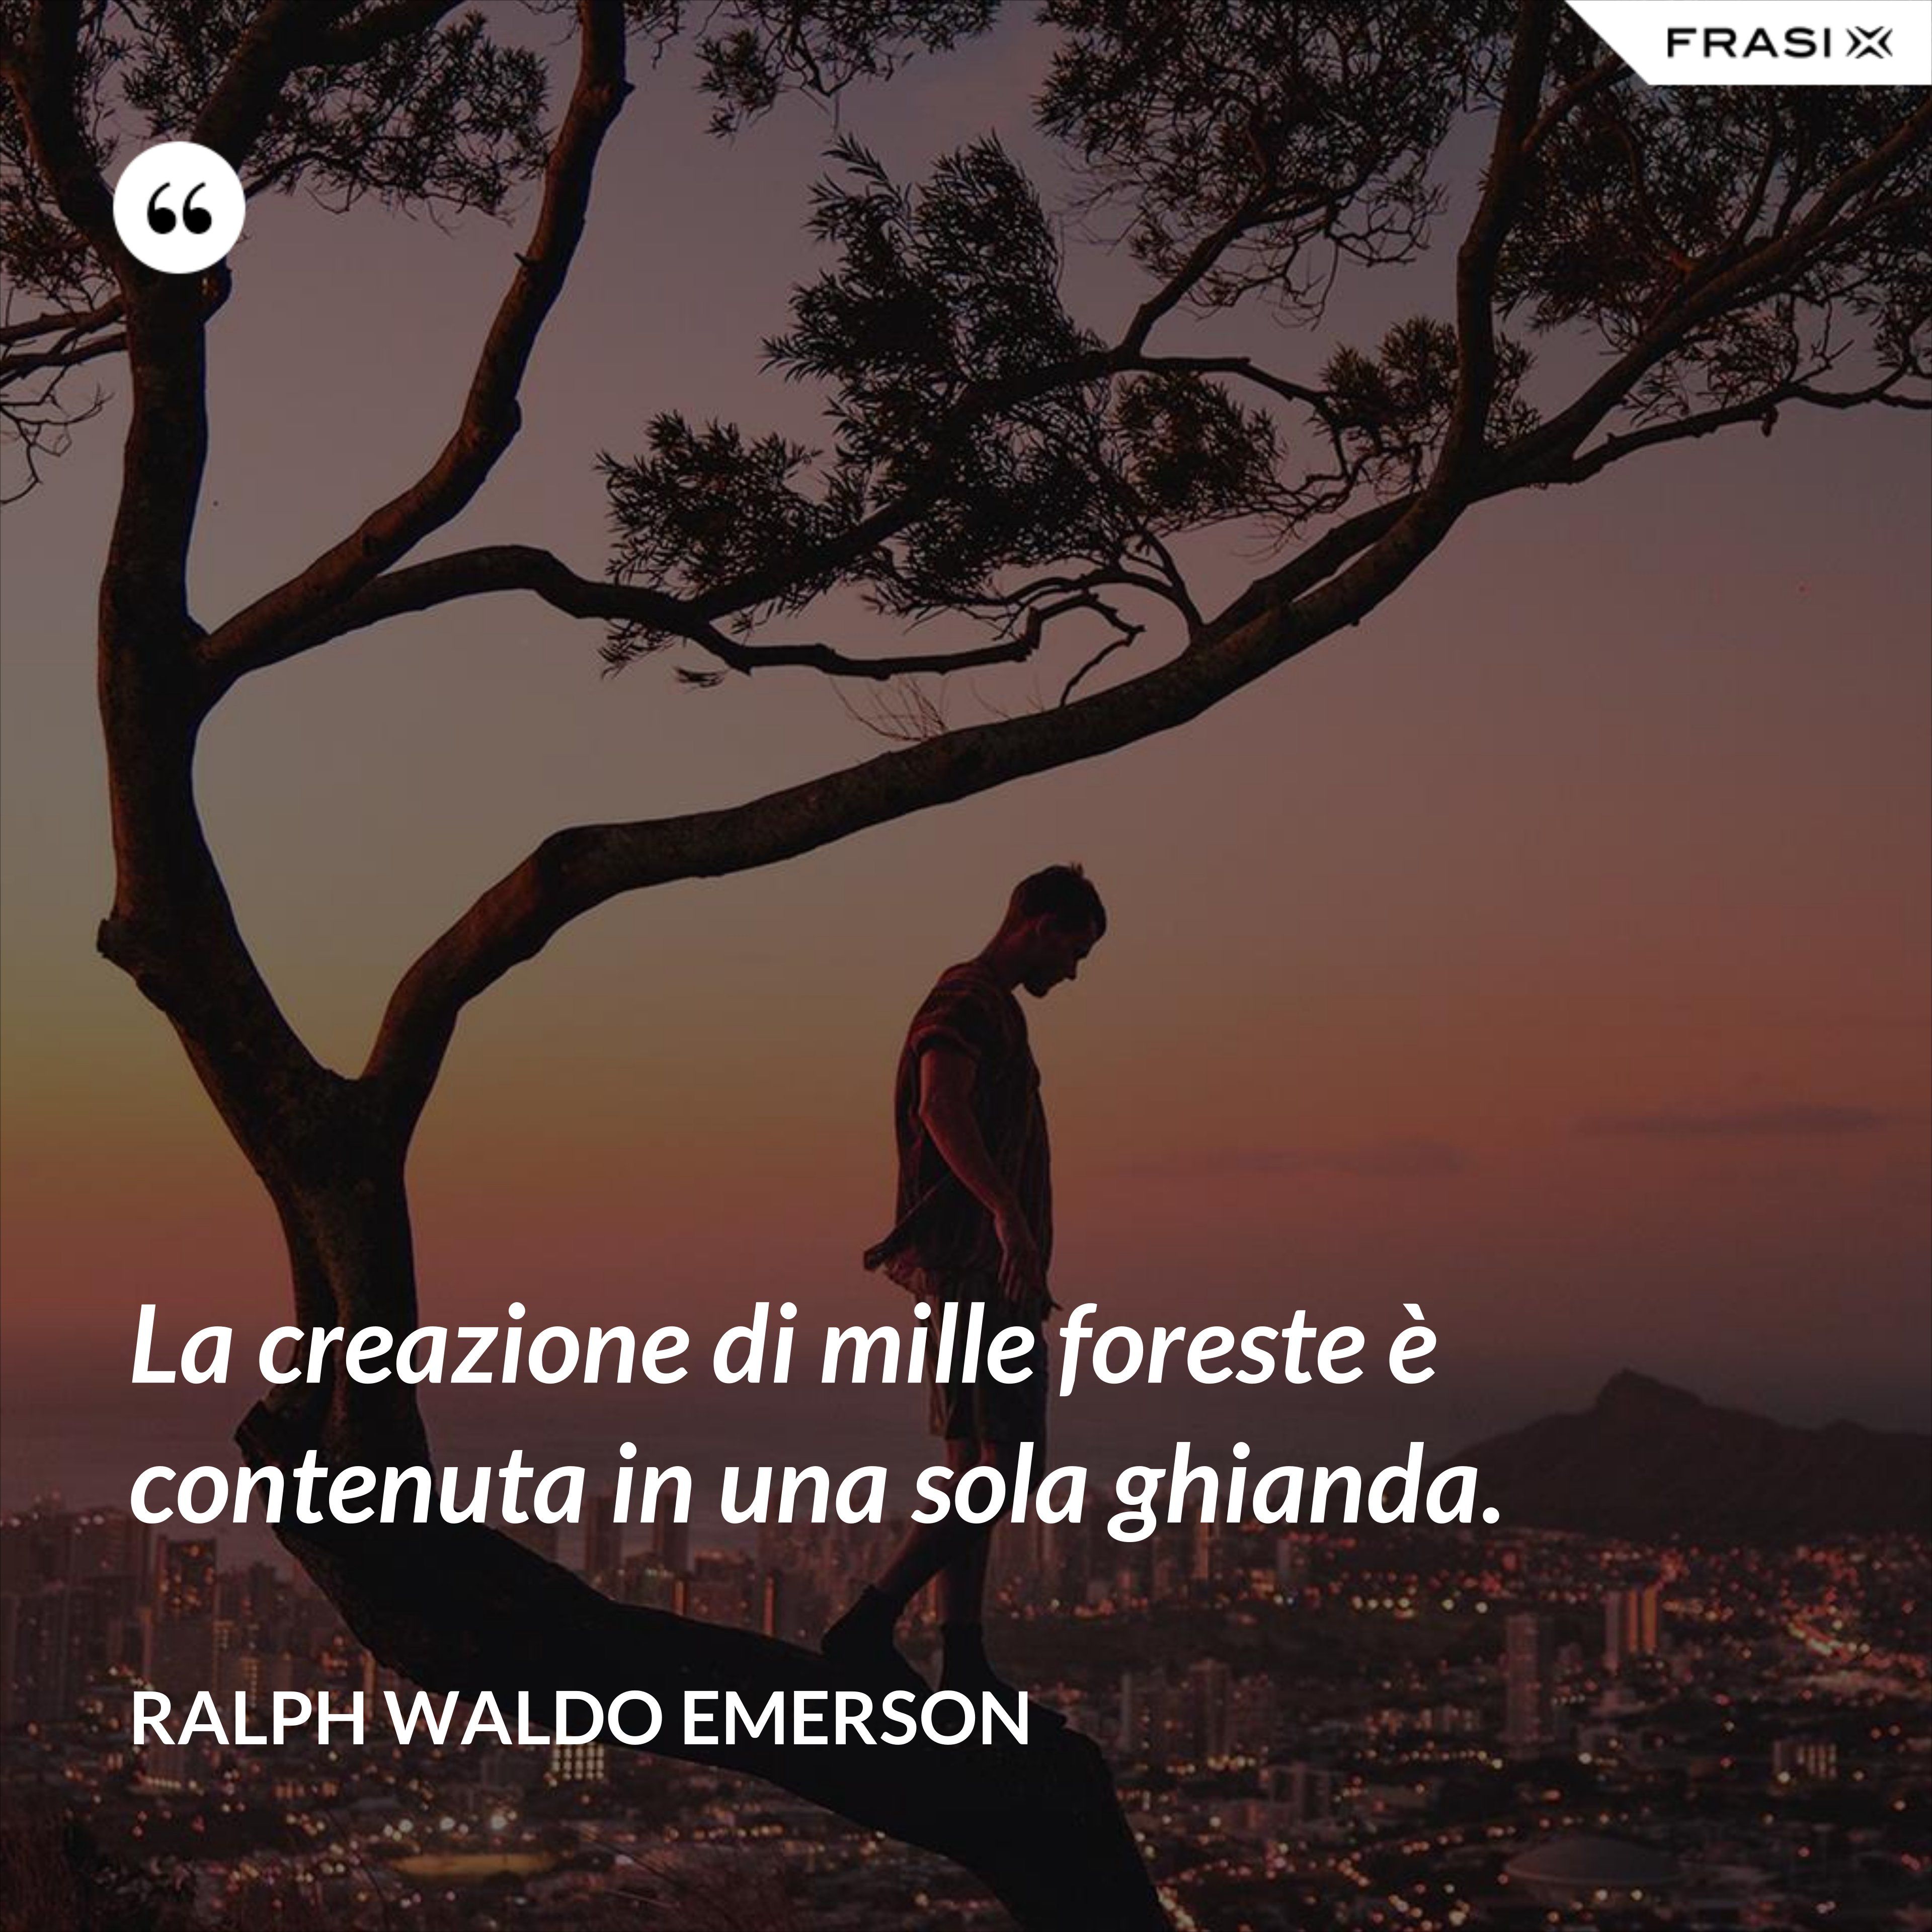 La creazione di mille foreste è contenuta in una sola ghianda. - Ralph Waldo Emerson